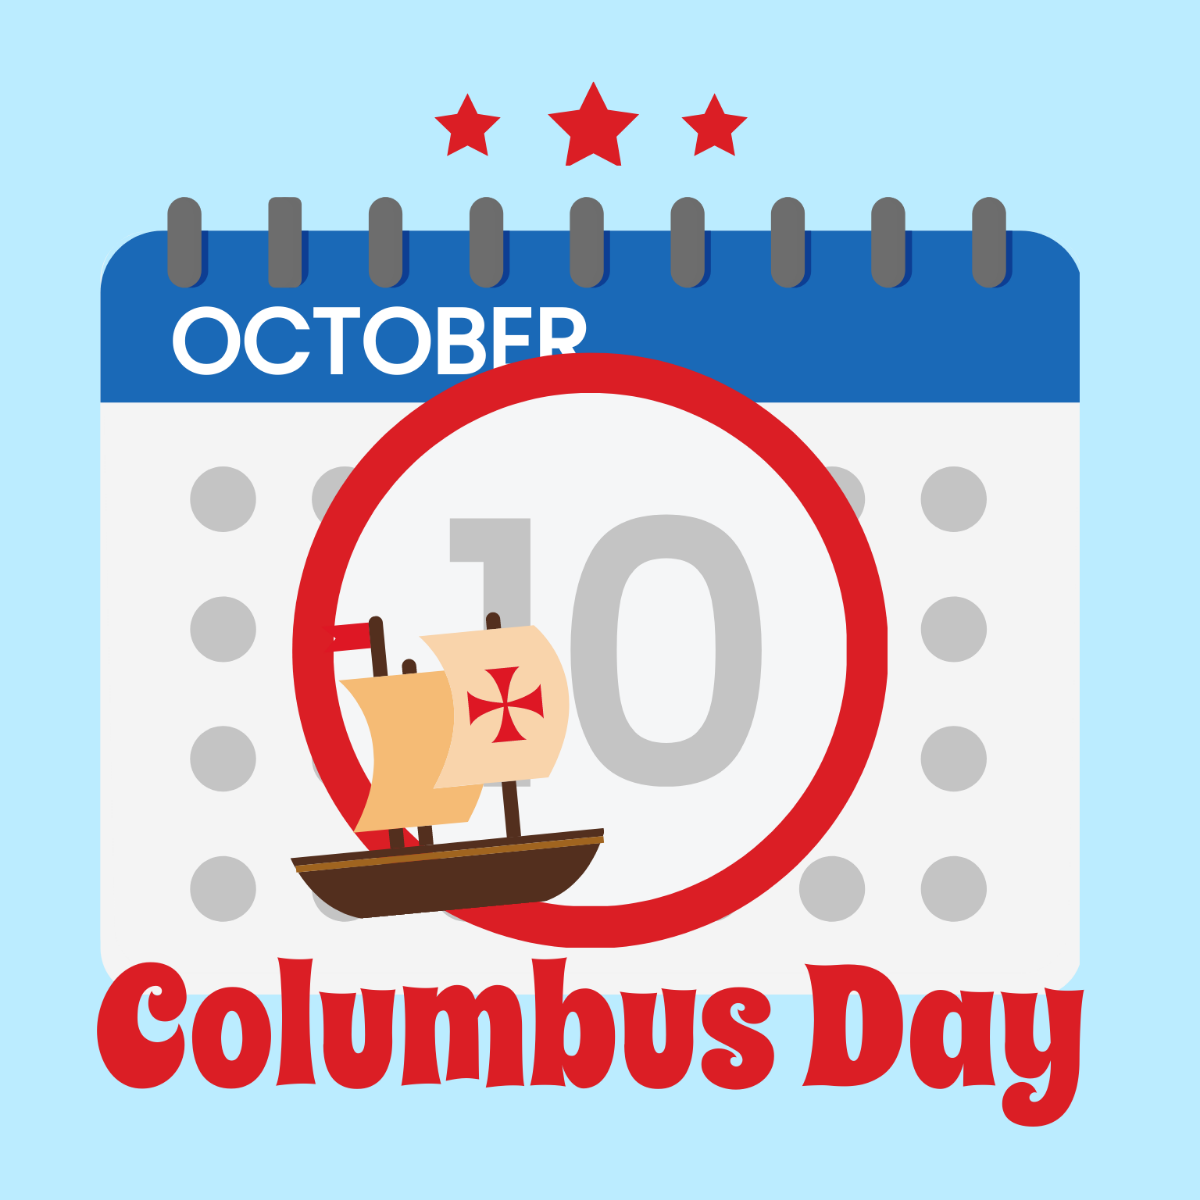 Free columbus day